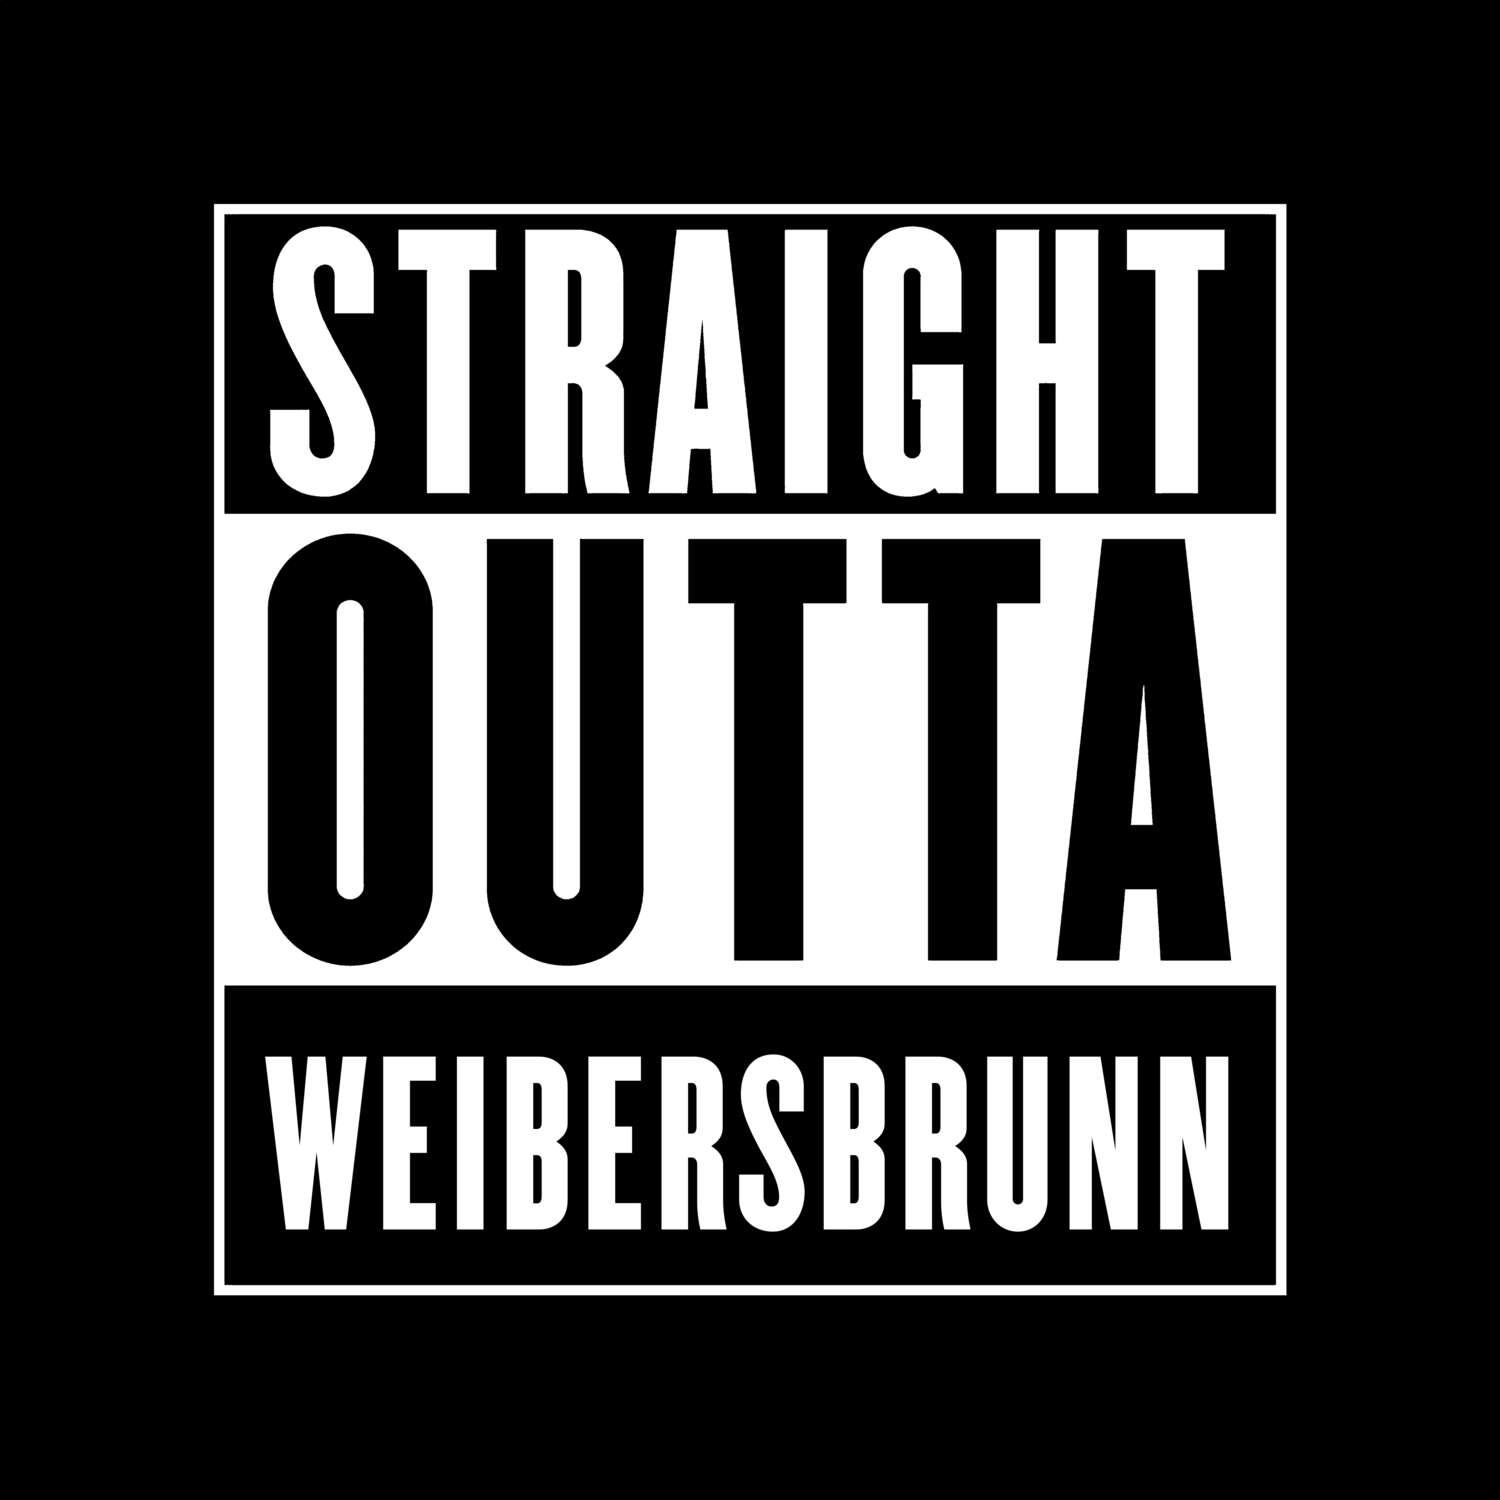 Weibersbrunn T-Shirt »Straight Outta«